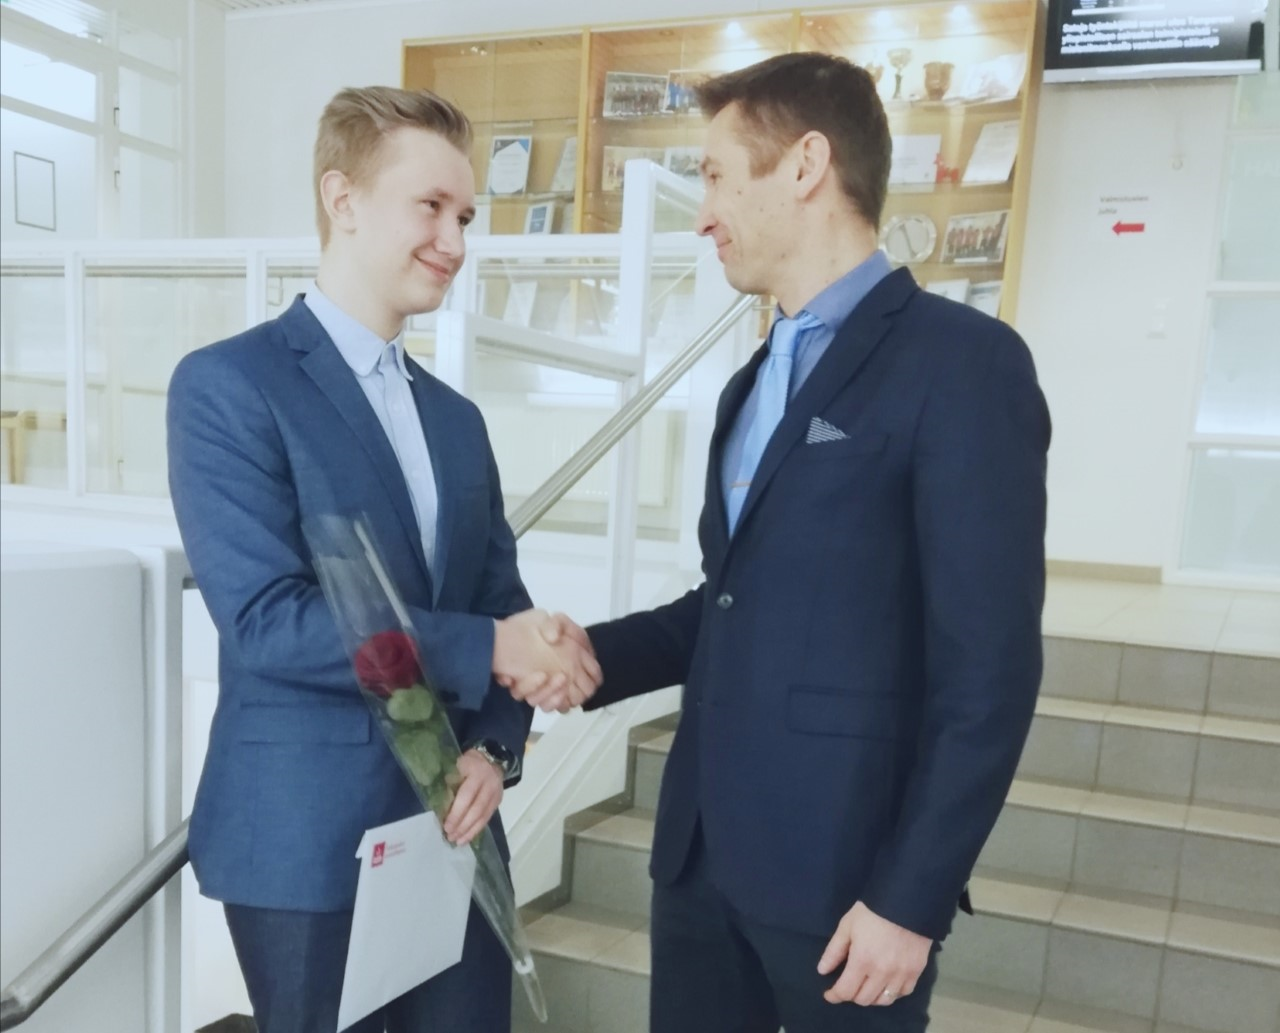 Valkeakosken ammattiopisto, VAAO. Toimialapäällikkö Mikko Siirilä kättelee portaikossa valmistunutta oppilasta. Oppilaalla on kädessään punainen ruusu ja VAAOn kirjekuori.